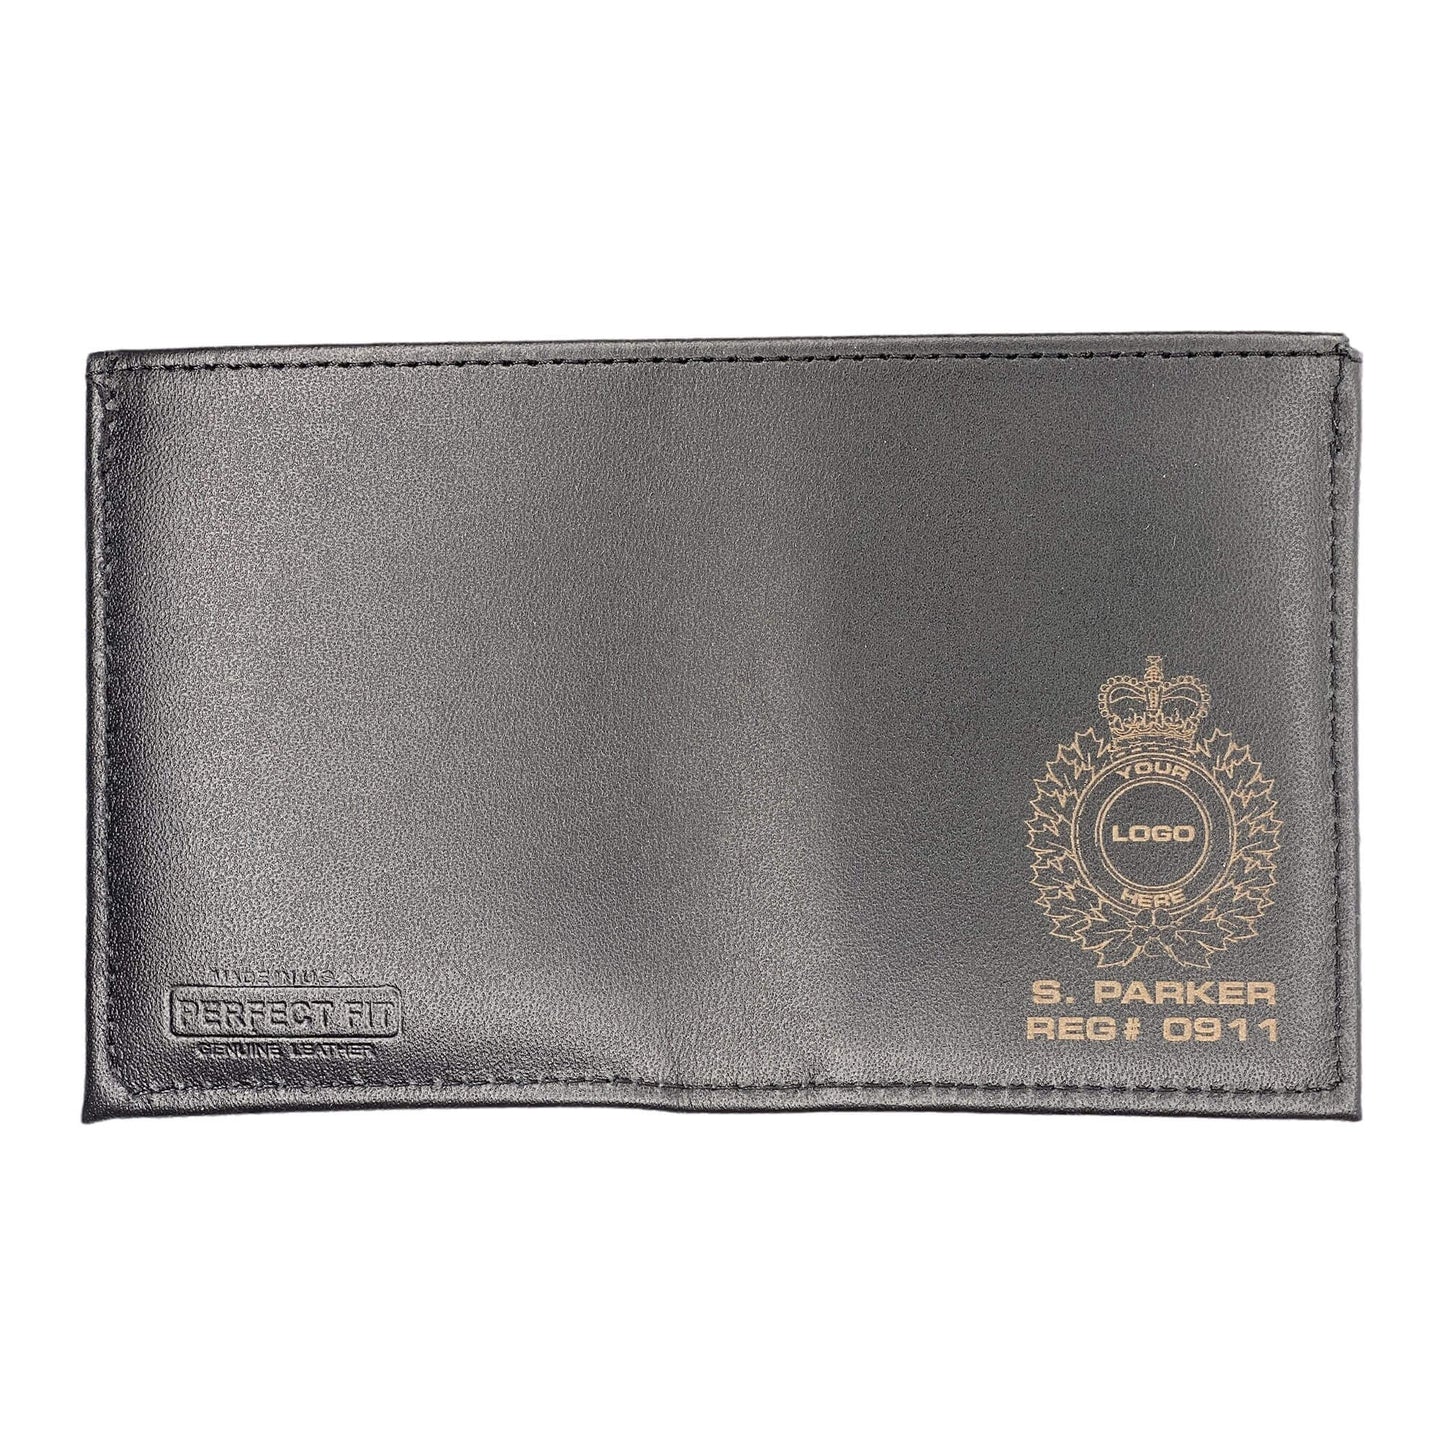 Ontario Park Warden Badge Wallet